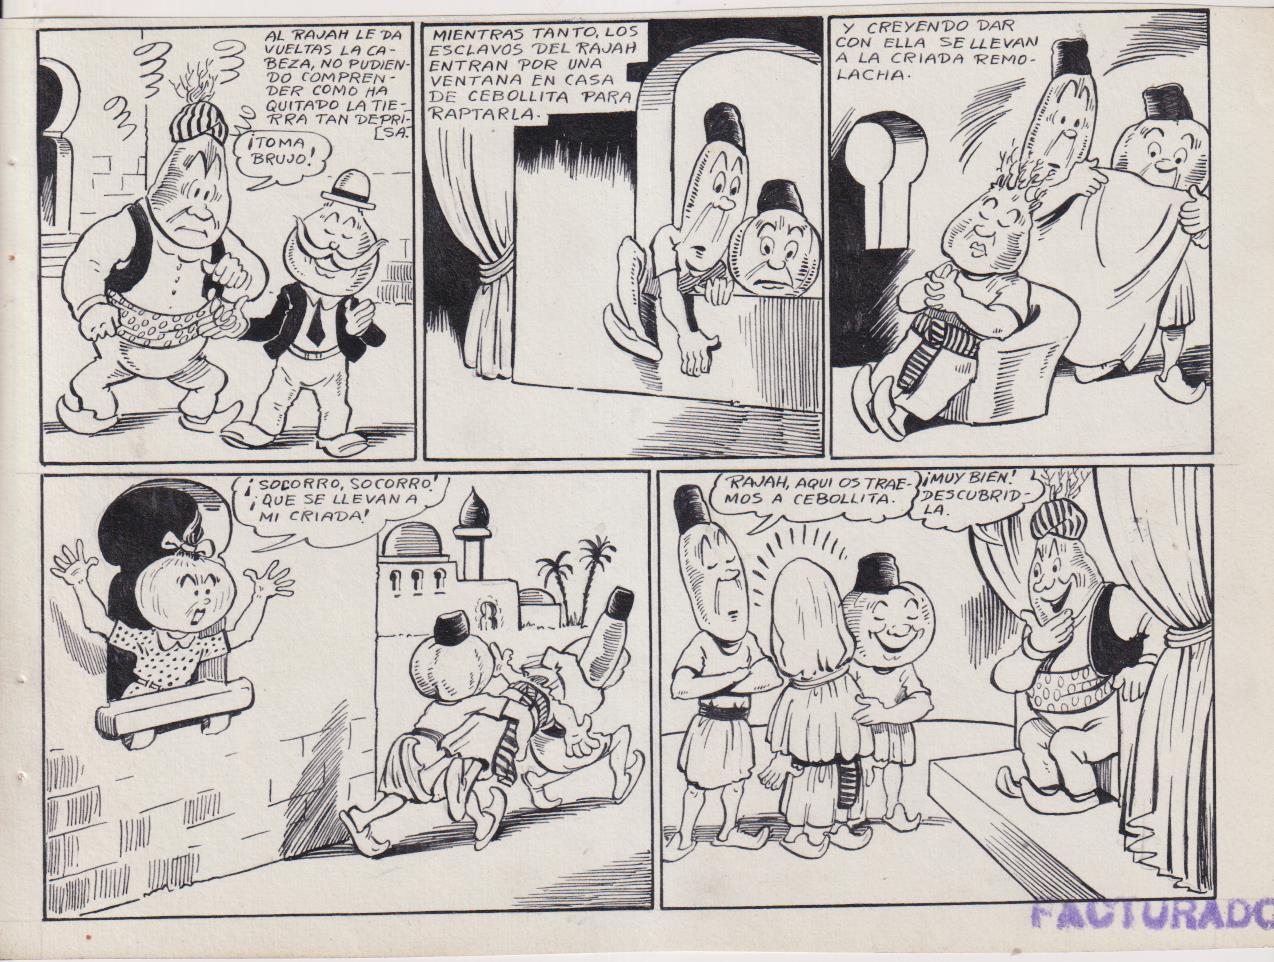 Rabanito y Cebollita. El Rajah. Dibujos Originales. (16,5x22) 9 páginas + color. Noviembre 1942